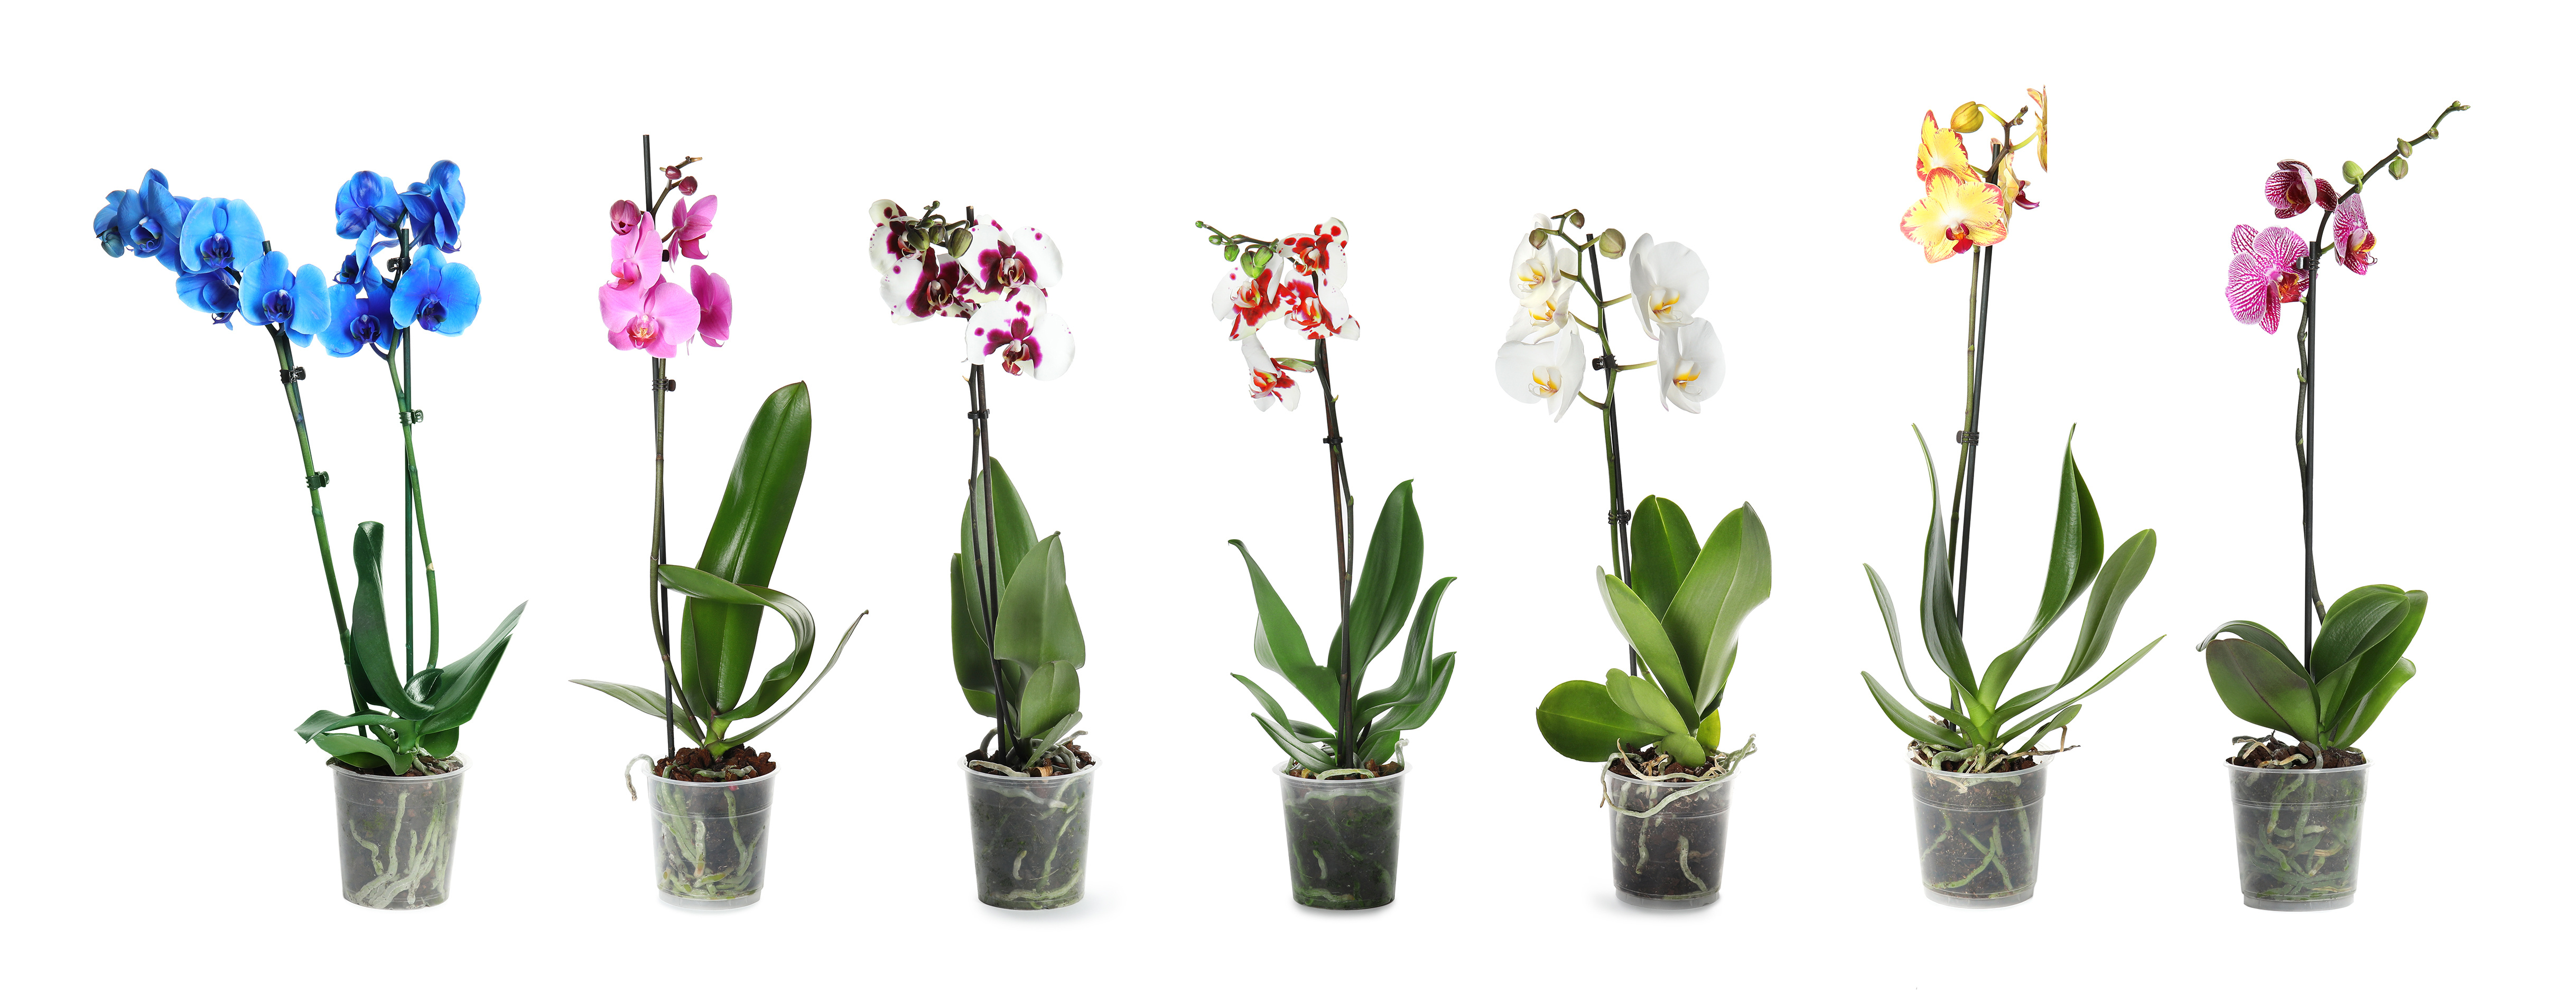 How to fertilize Orchids